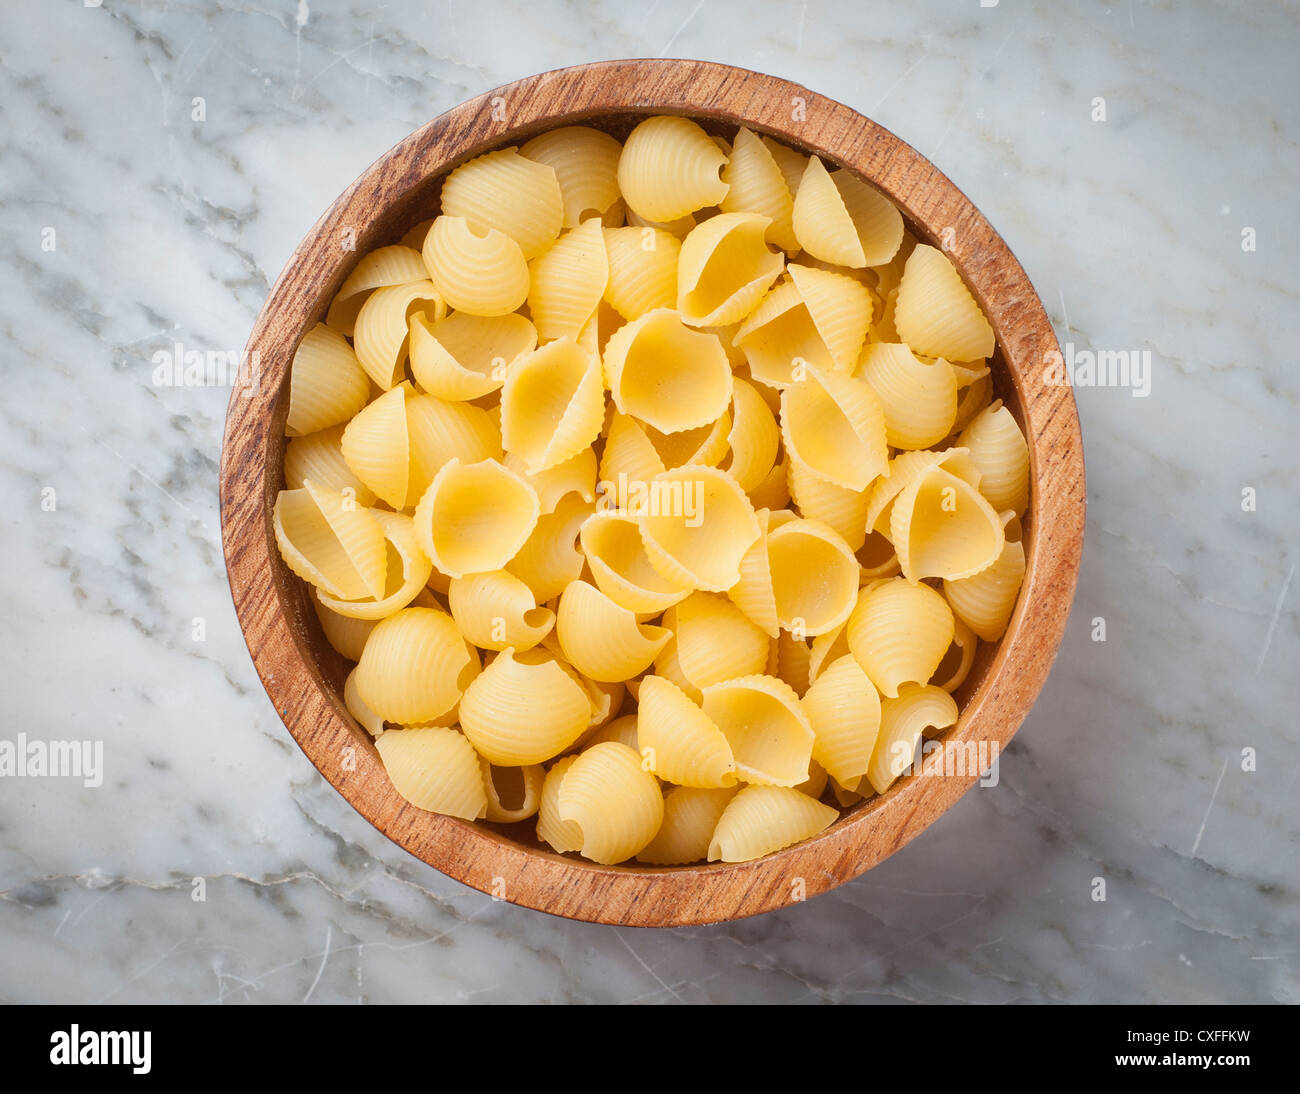 Mostra un tipo di pasta alimentare secca Foto Stock